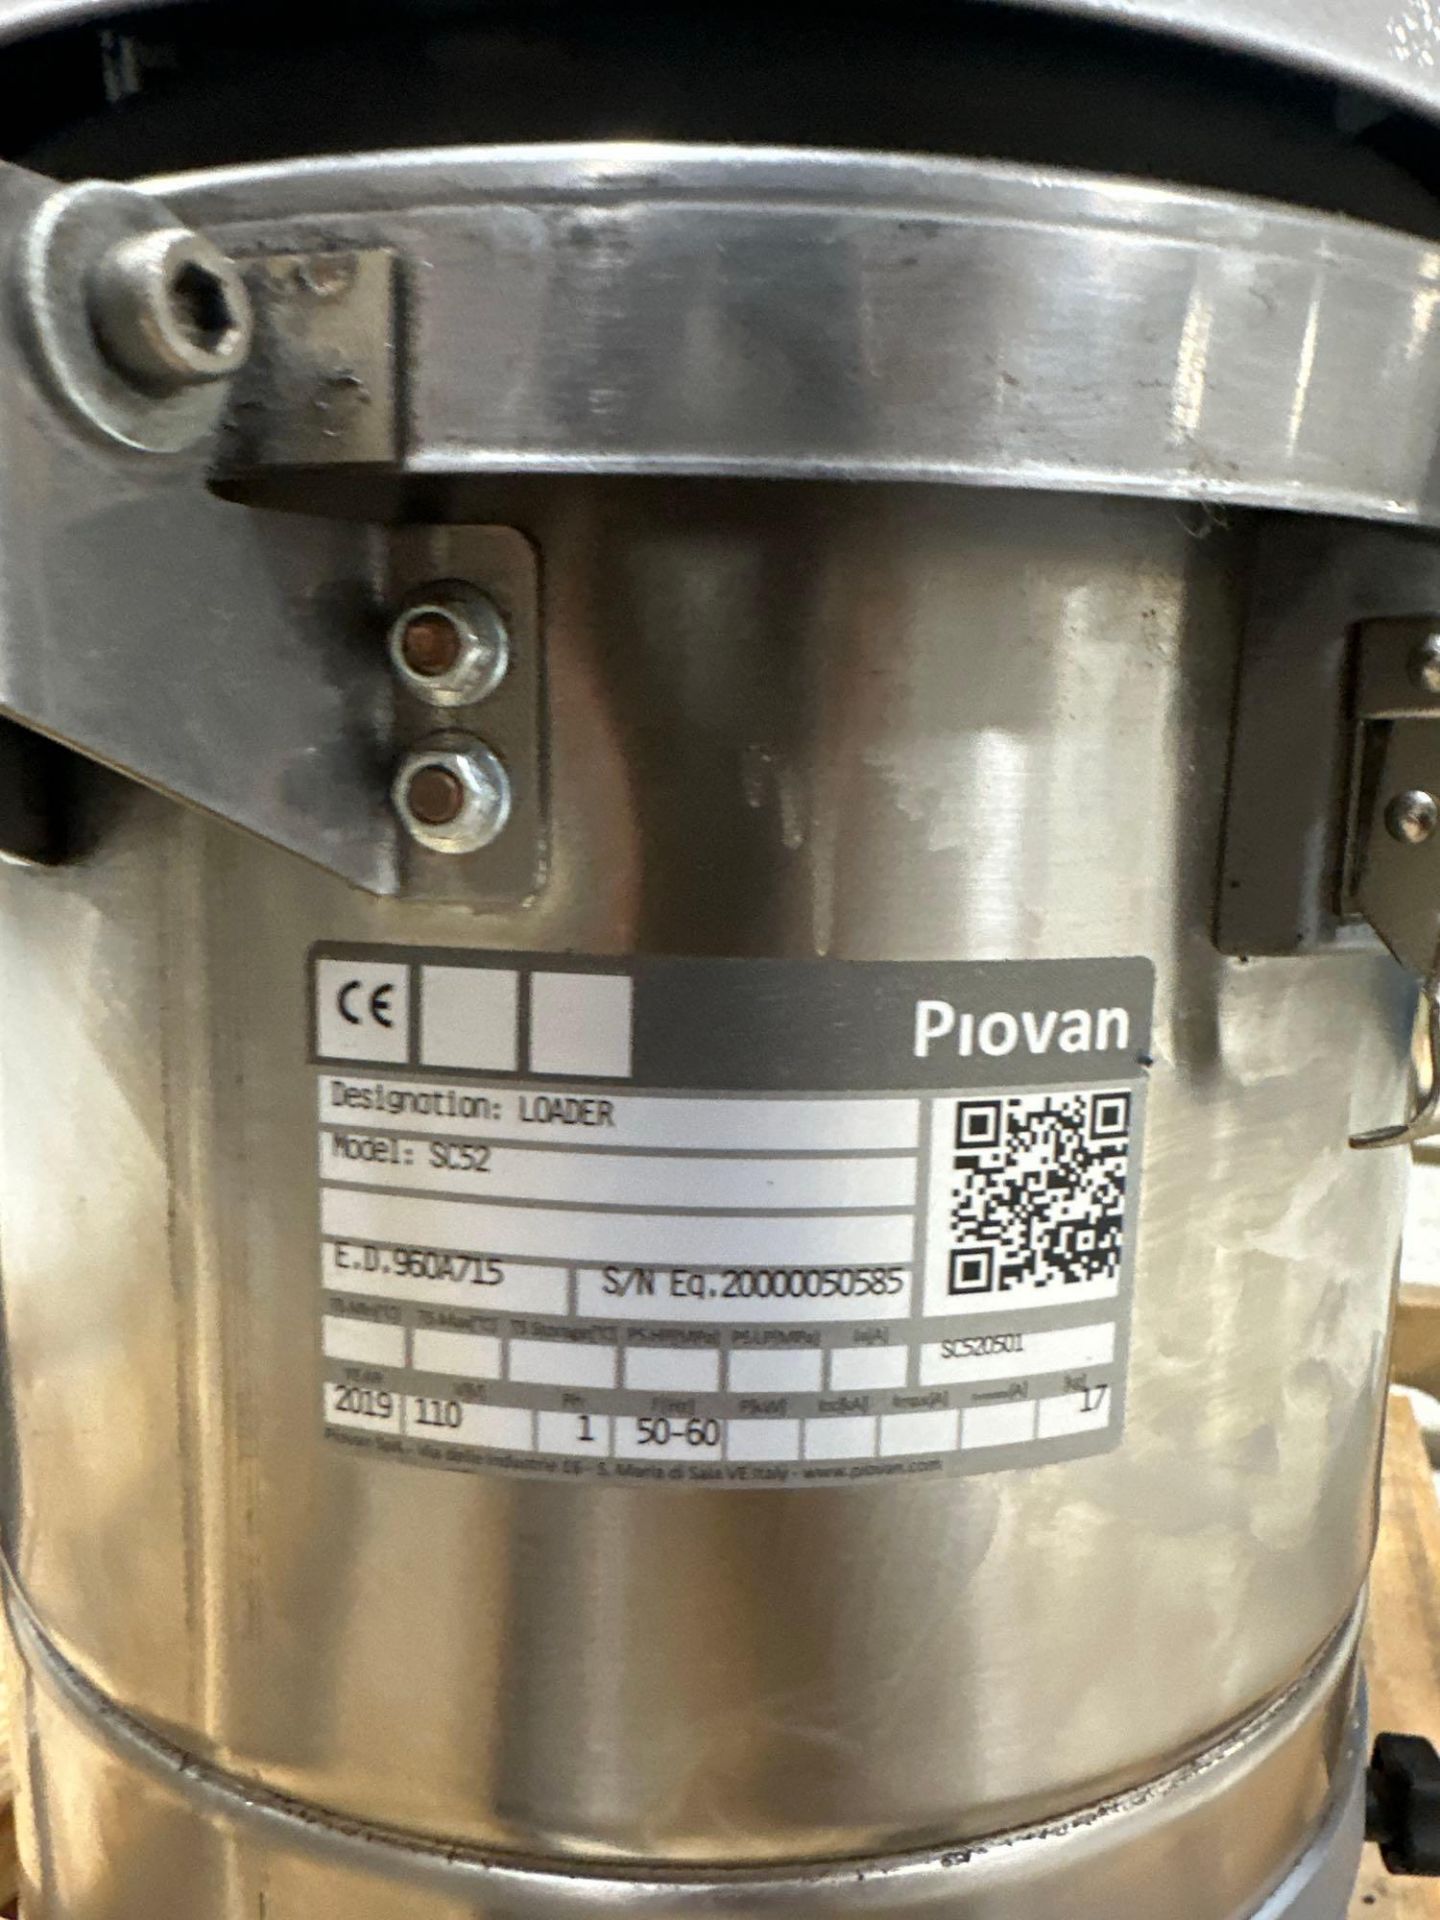 Piovan SC52 Loader, s/n 20000050585, 2019 - Image 4 of 4